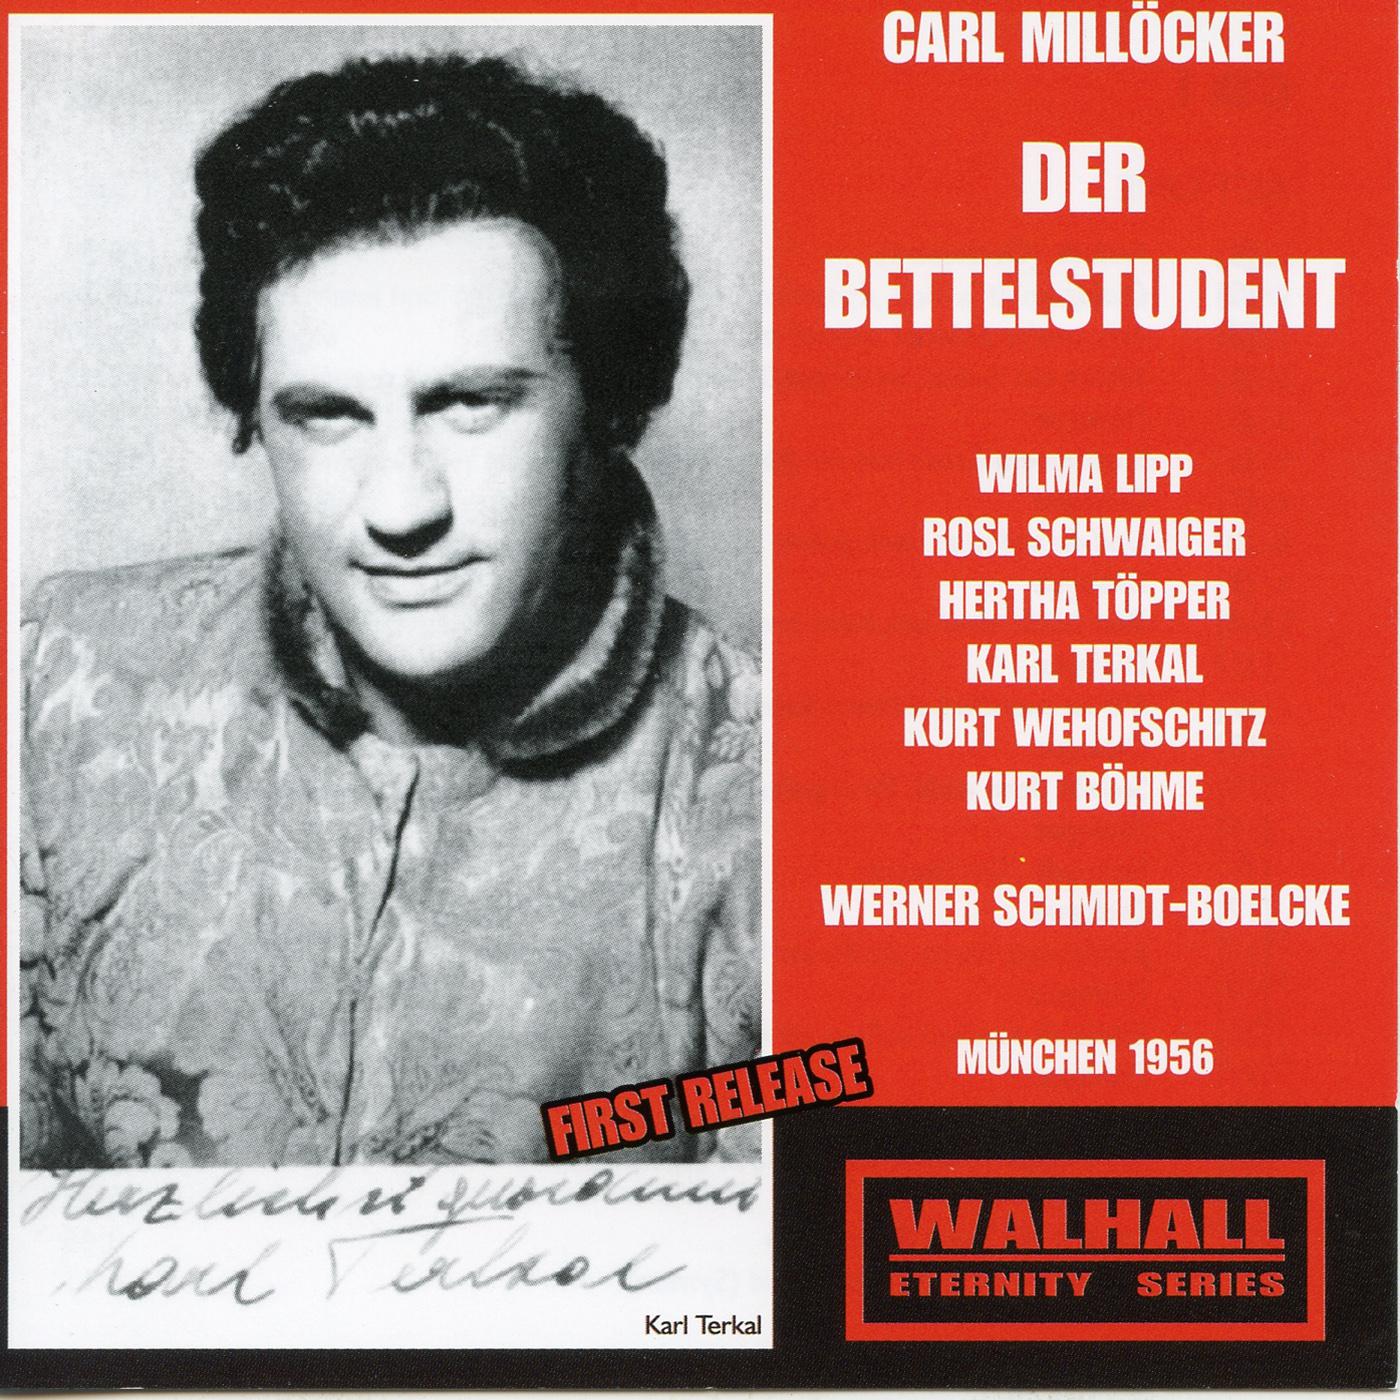 MILL CKER, C.: Bettelstudent Der Operetta Lipp, Schwaiger, T pper, Terkal, Wehofschitz, B hme, SchmidtBoelcke 1956